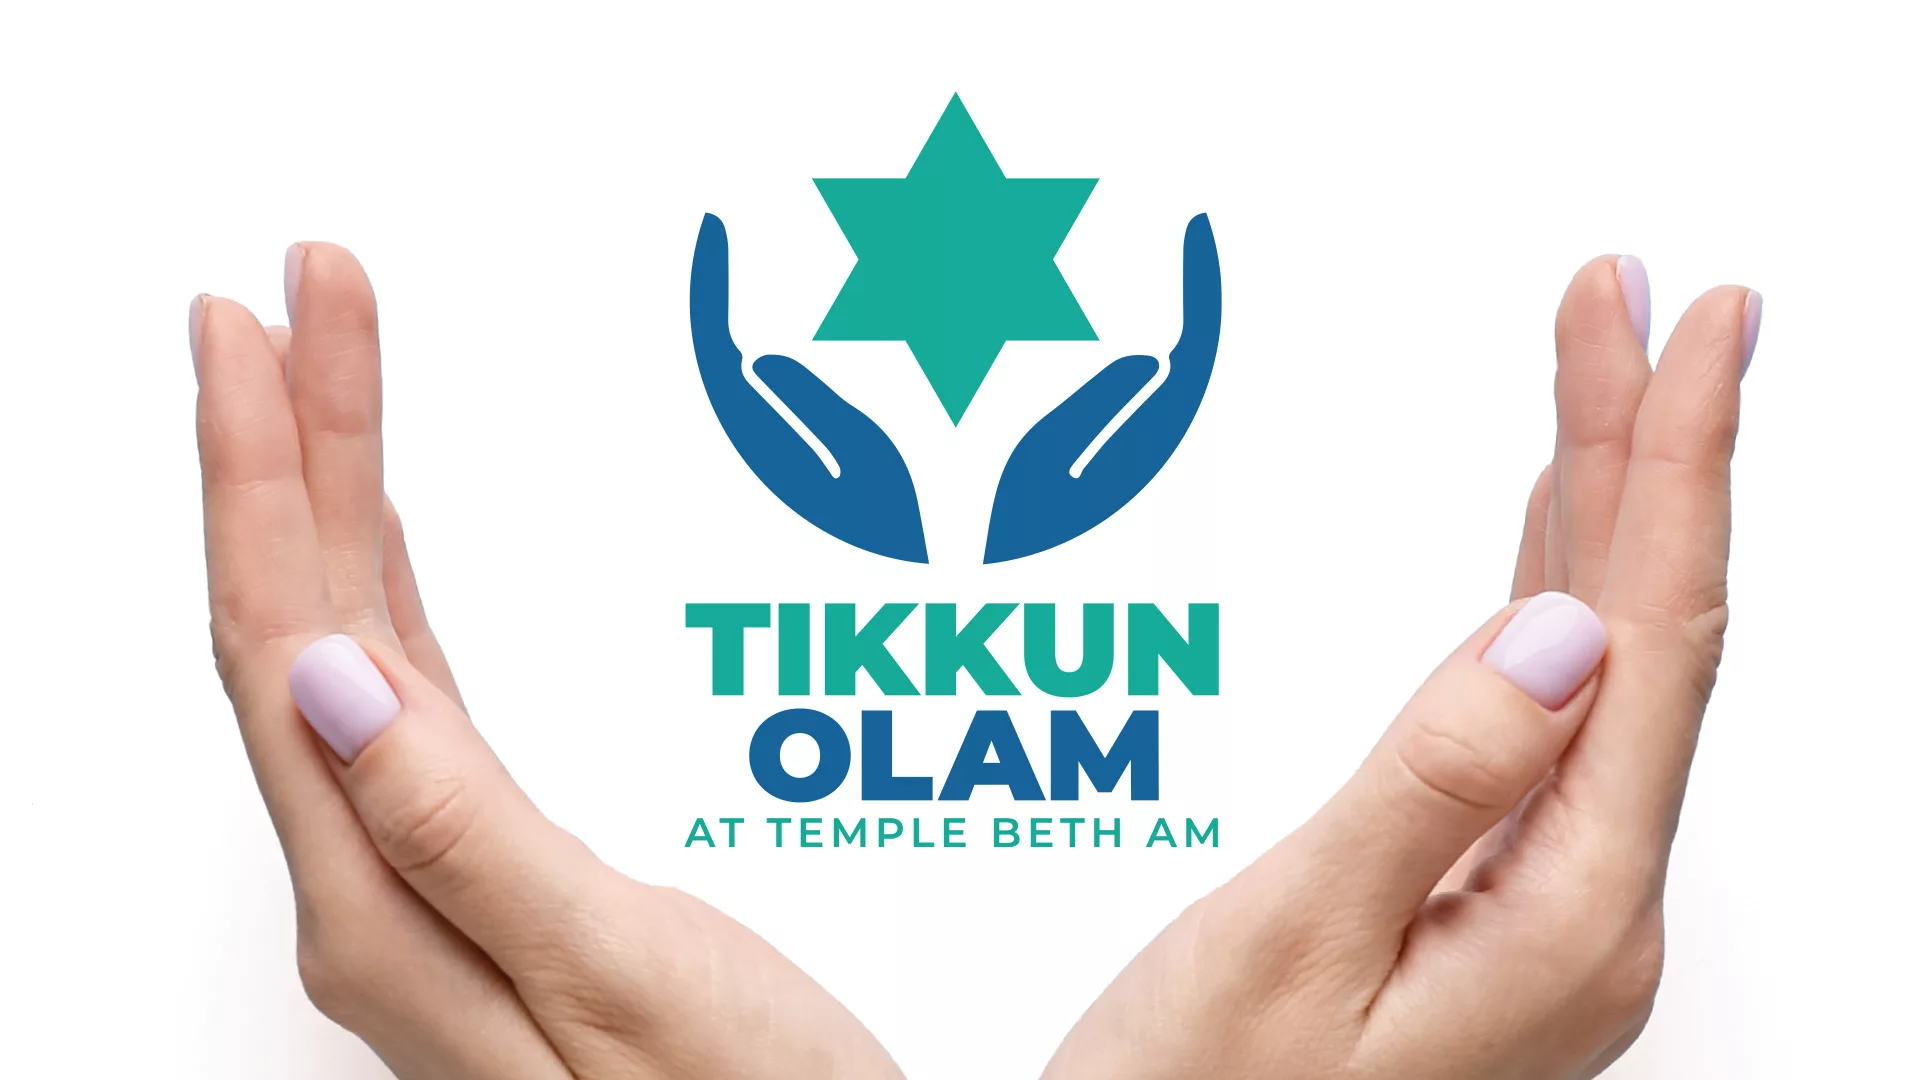 Tikkun Olam Web Banner, hands together